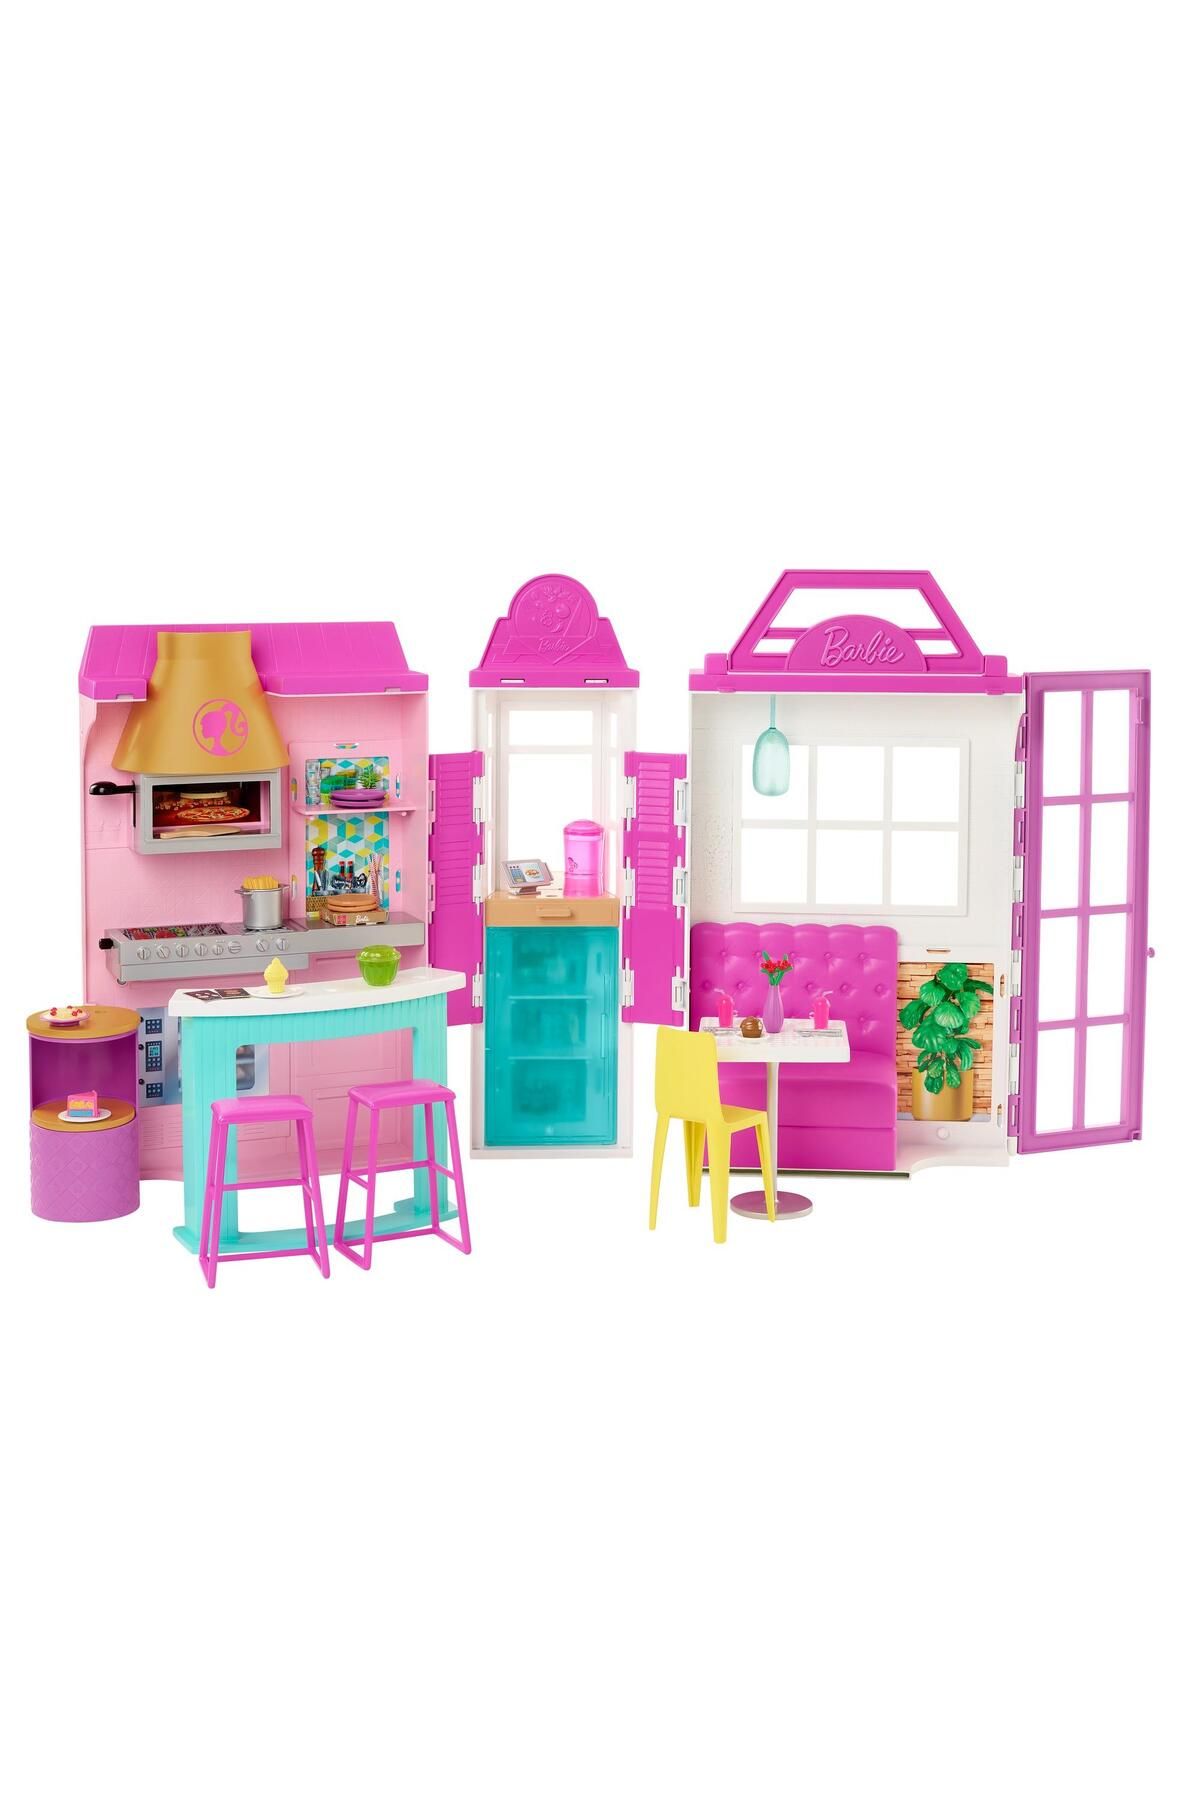 Barbie 'nin Muhteşem Restoranı Oyun Seti Gxy72